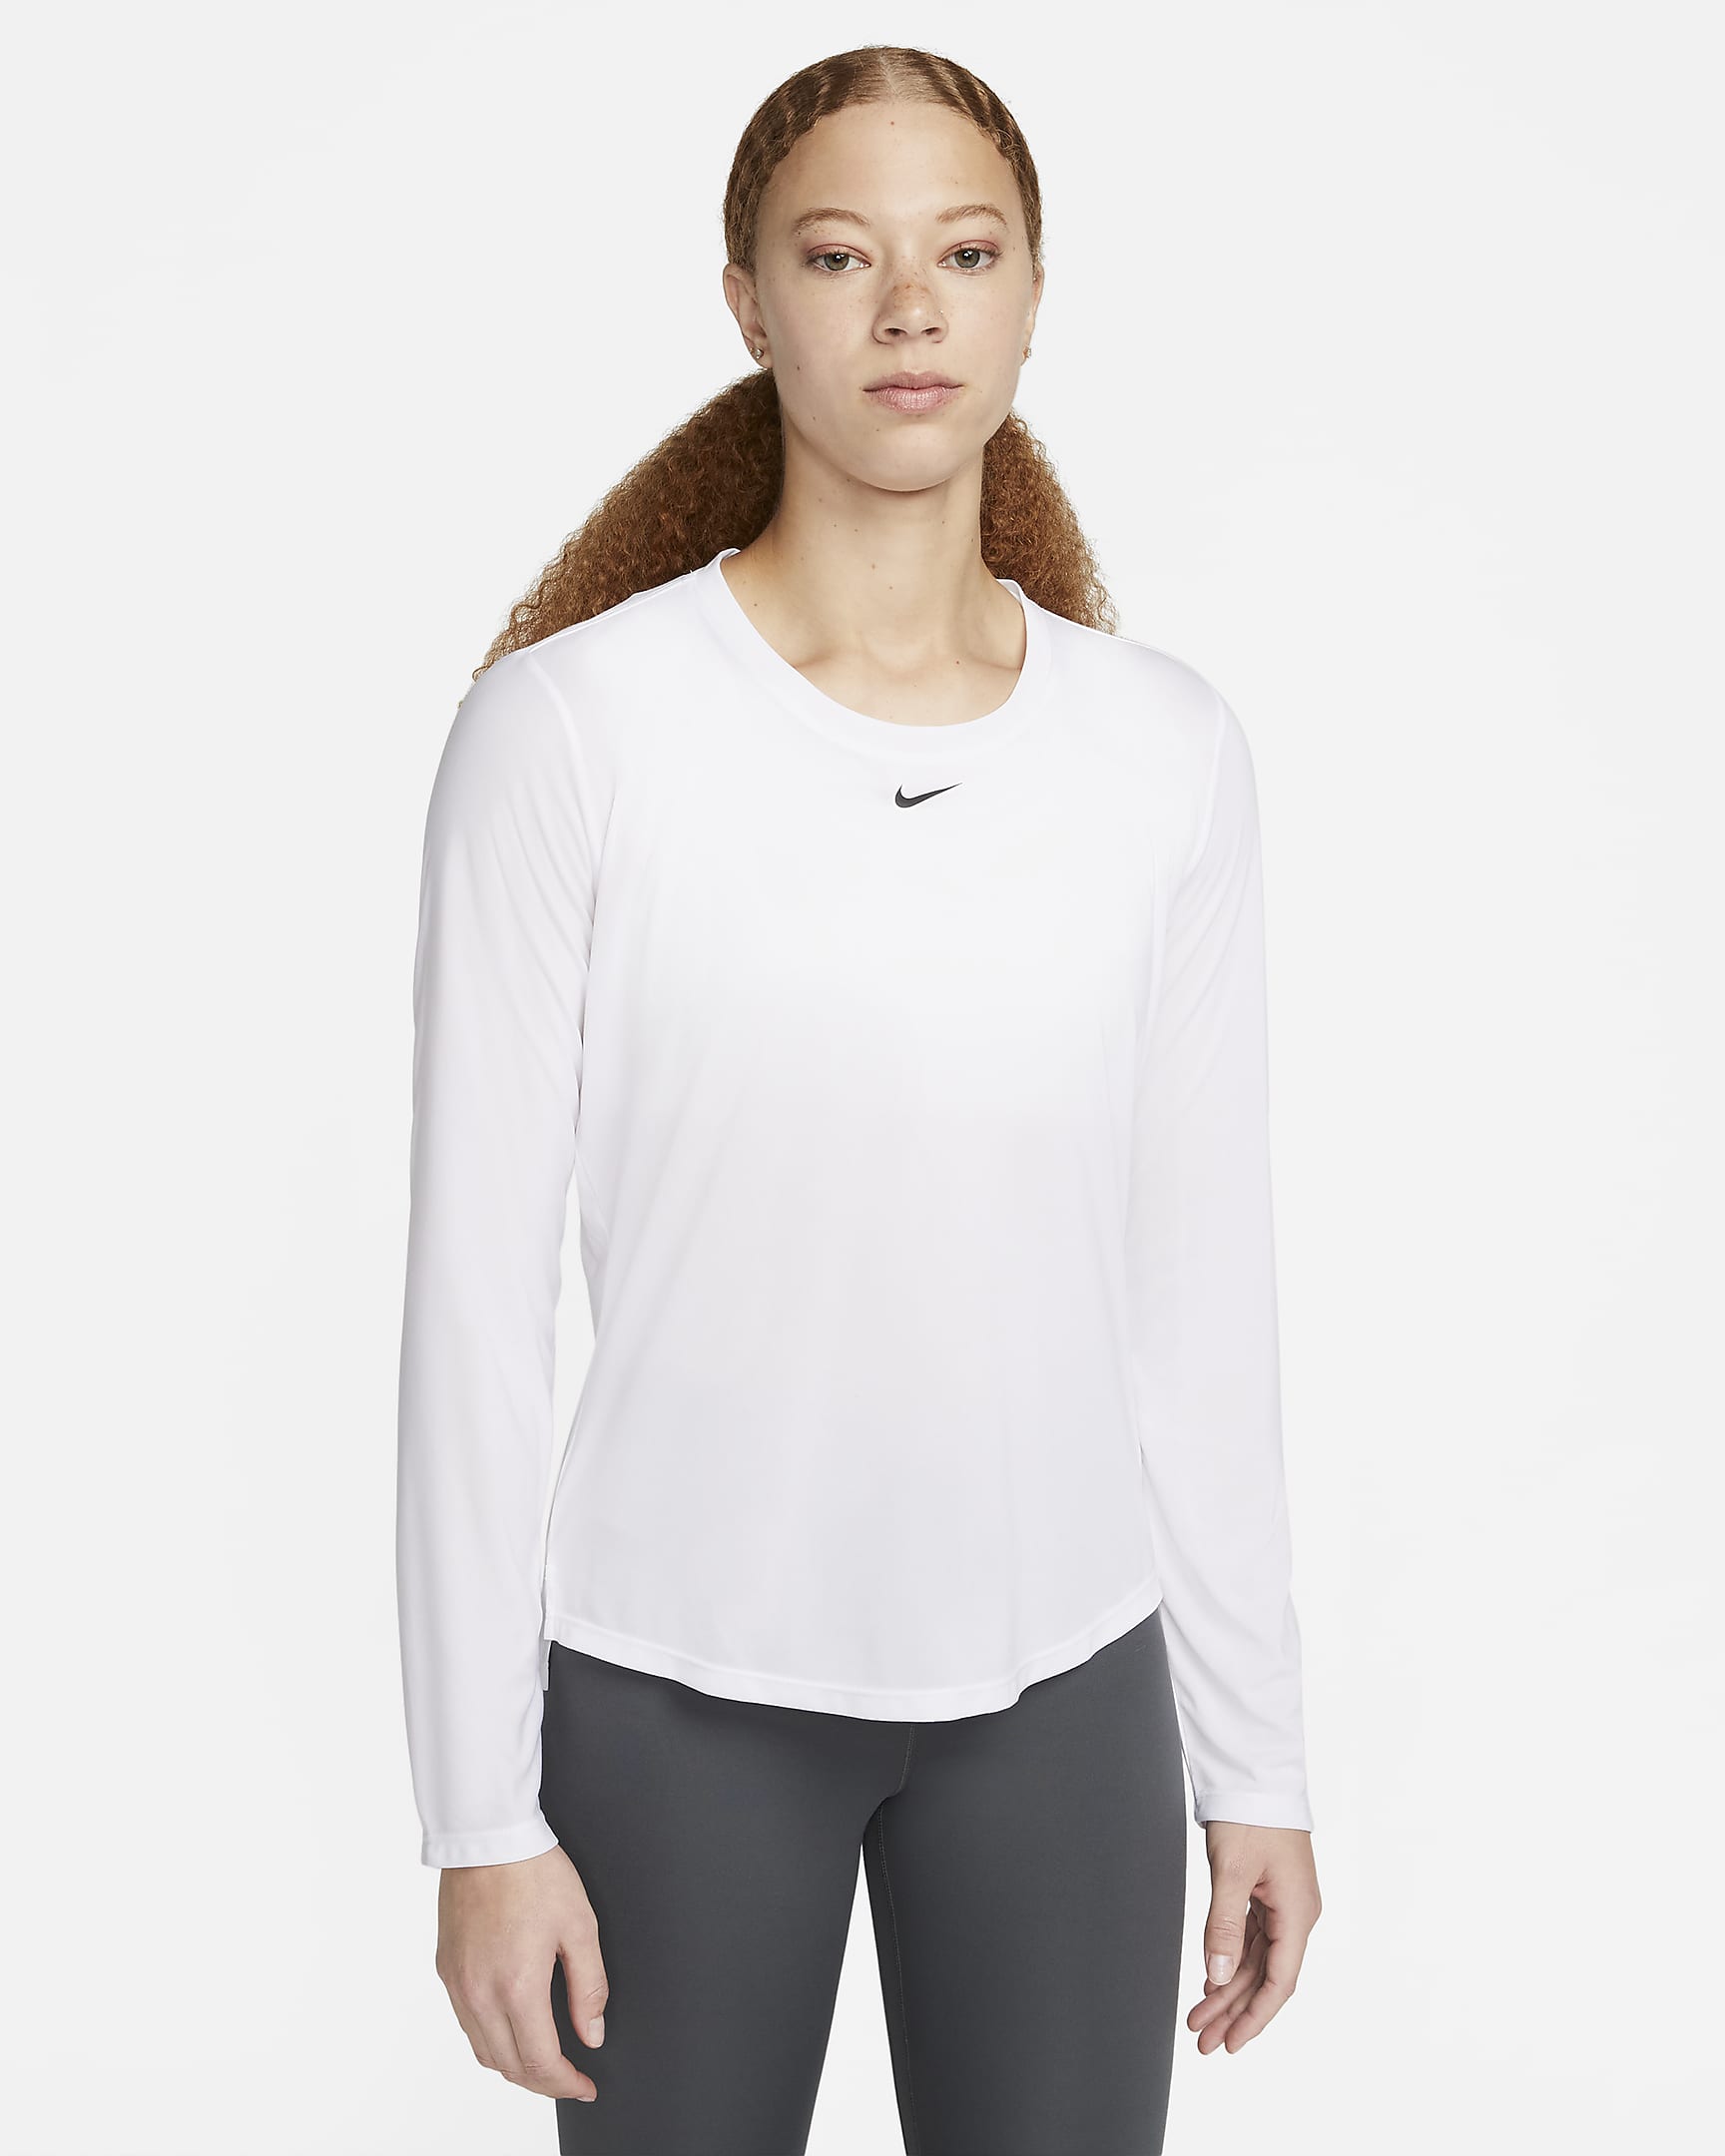 Nike Dri-FIT One Women's Standard Fit Long-Sleeve Top